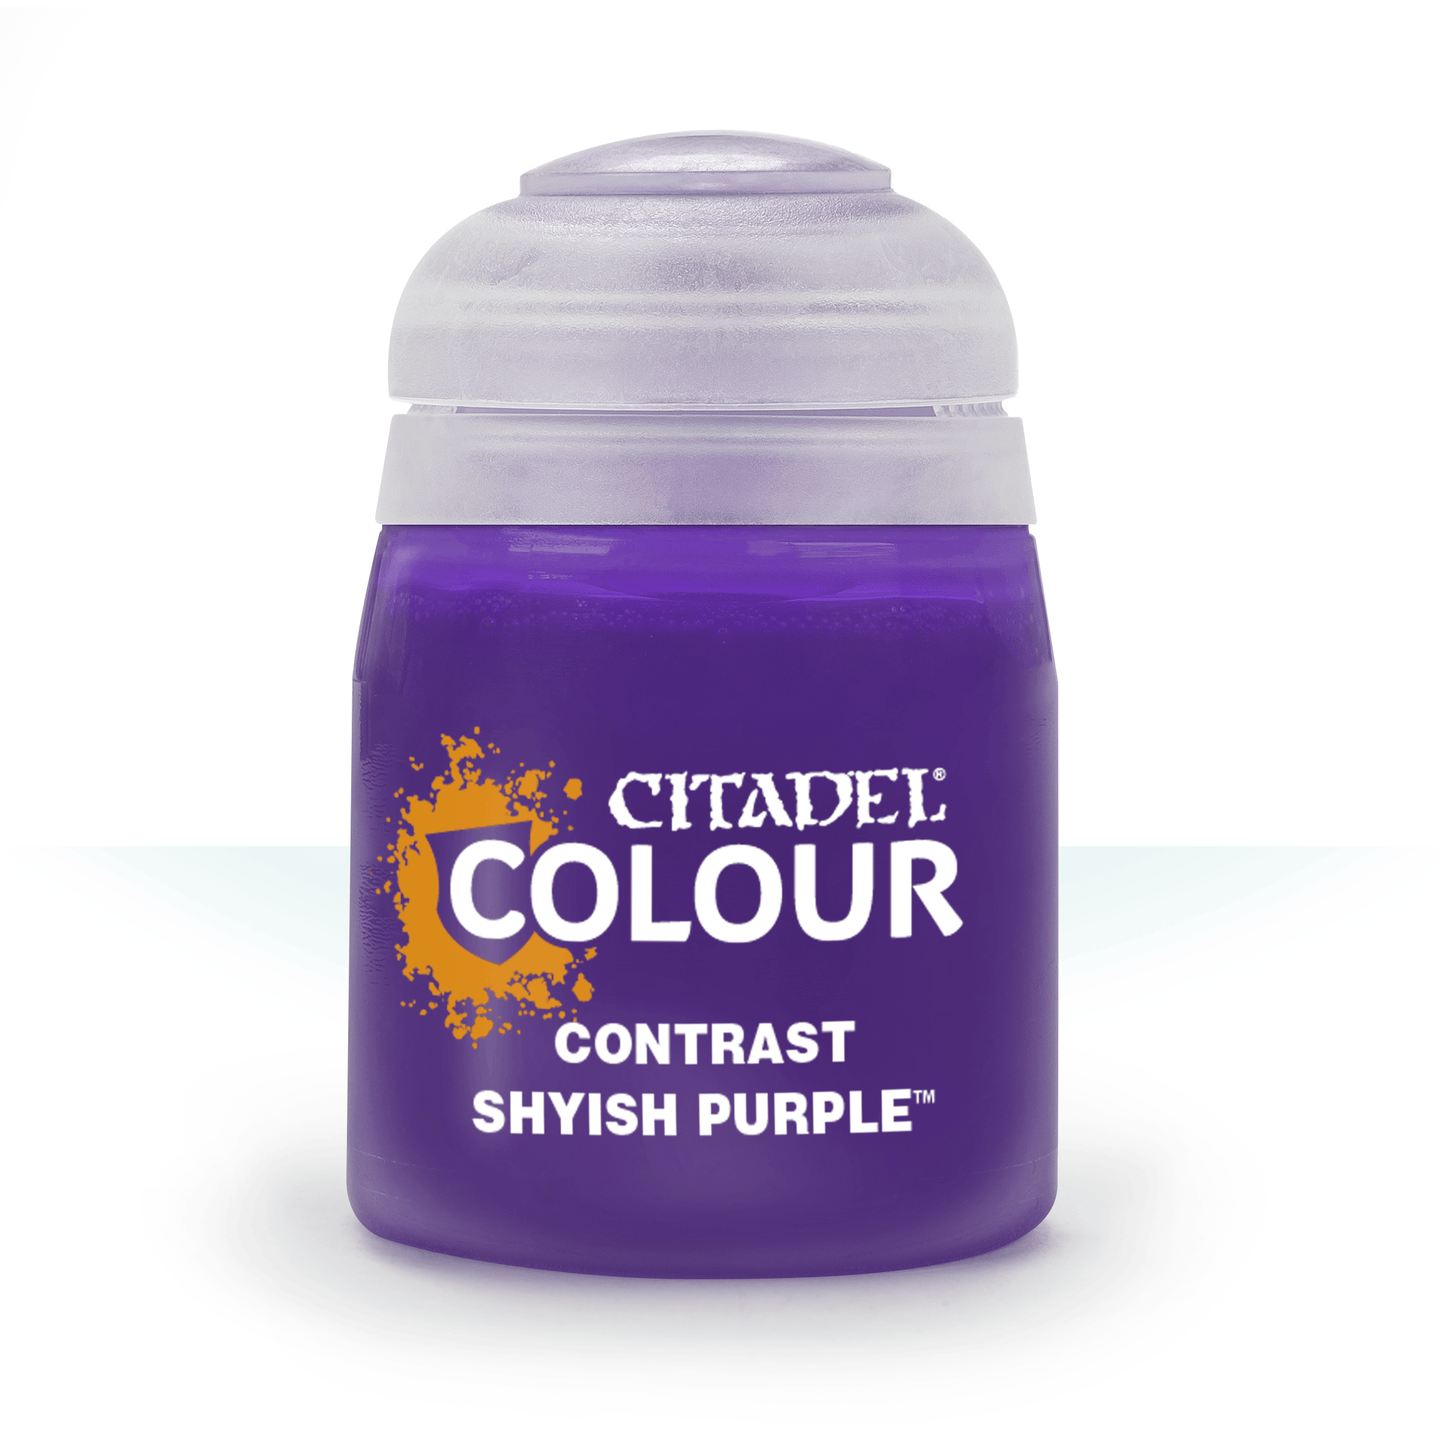 Citadel Colour - Shyish Purple Contrast Paint